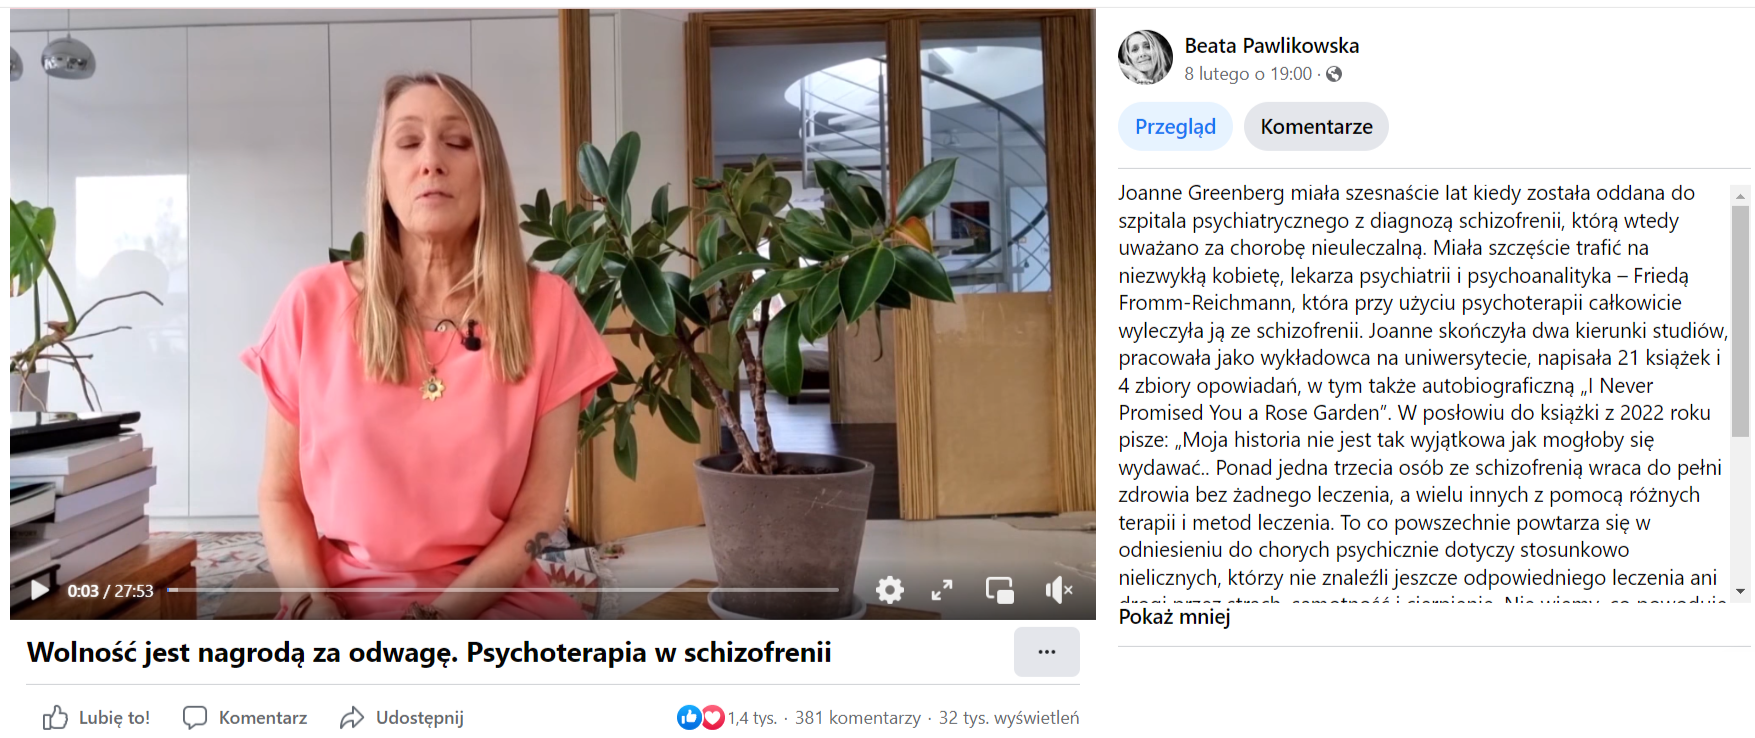 Zrzut ekranu z profilu Beaty Pawlikowskiej, na którym opublikowano nagranie dotyczące schizofrenii. Liczba reakcji: 1,4 tys., liczba komentarzy: 381, liczba udostępnień: 32 tys.